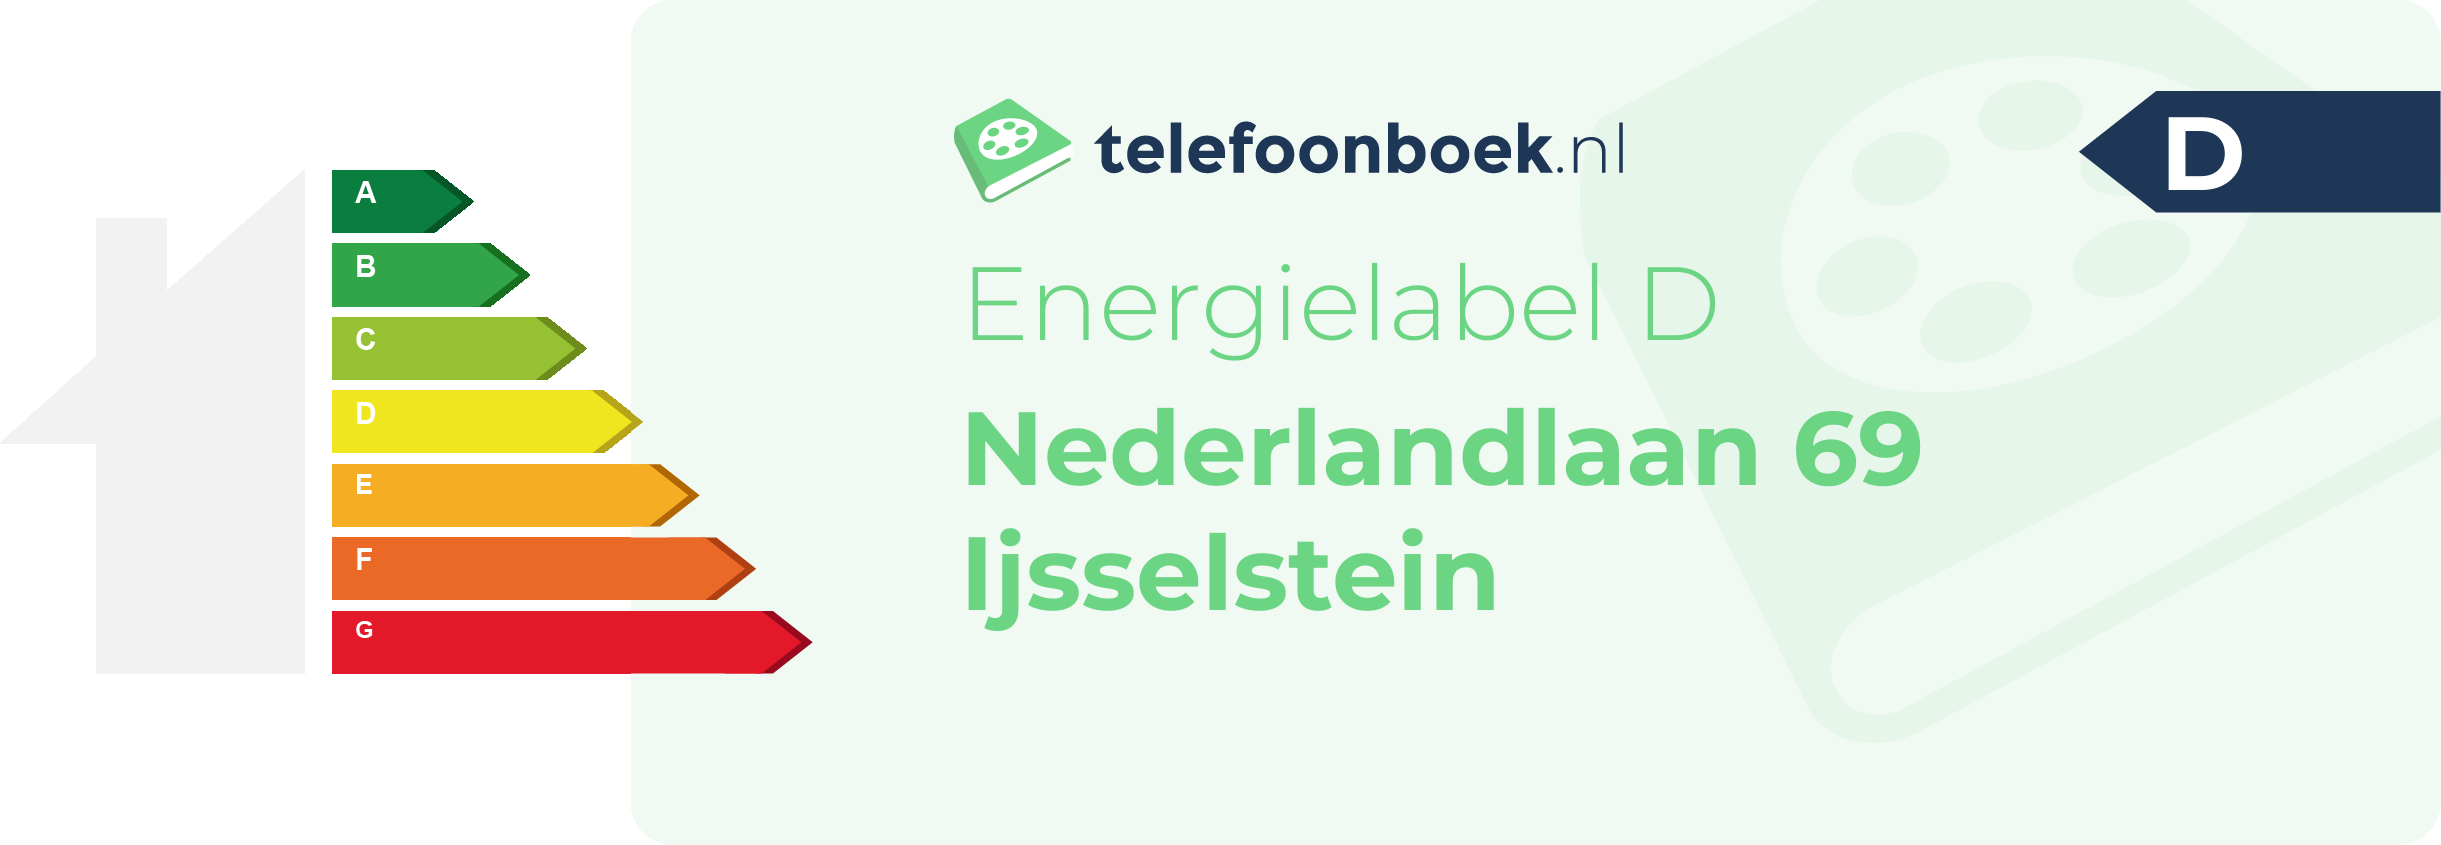 Energielabel Nederlandlaan 69 Ijsselstein